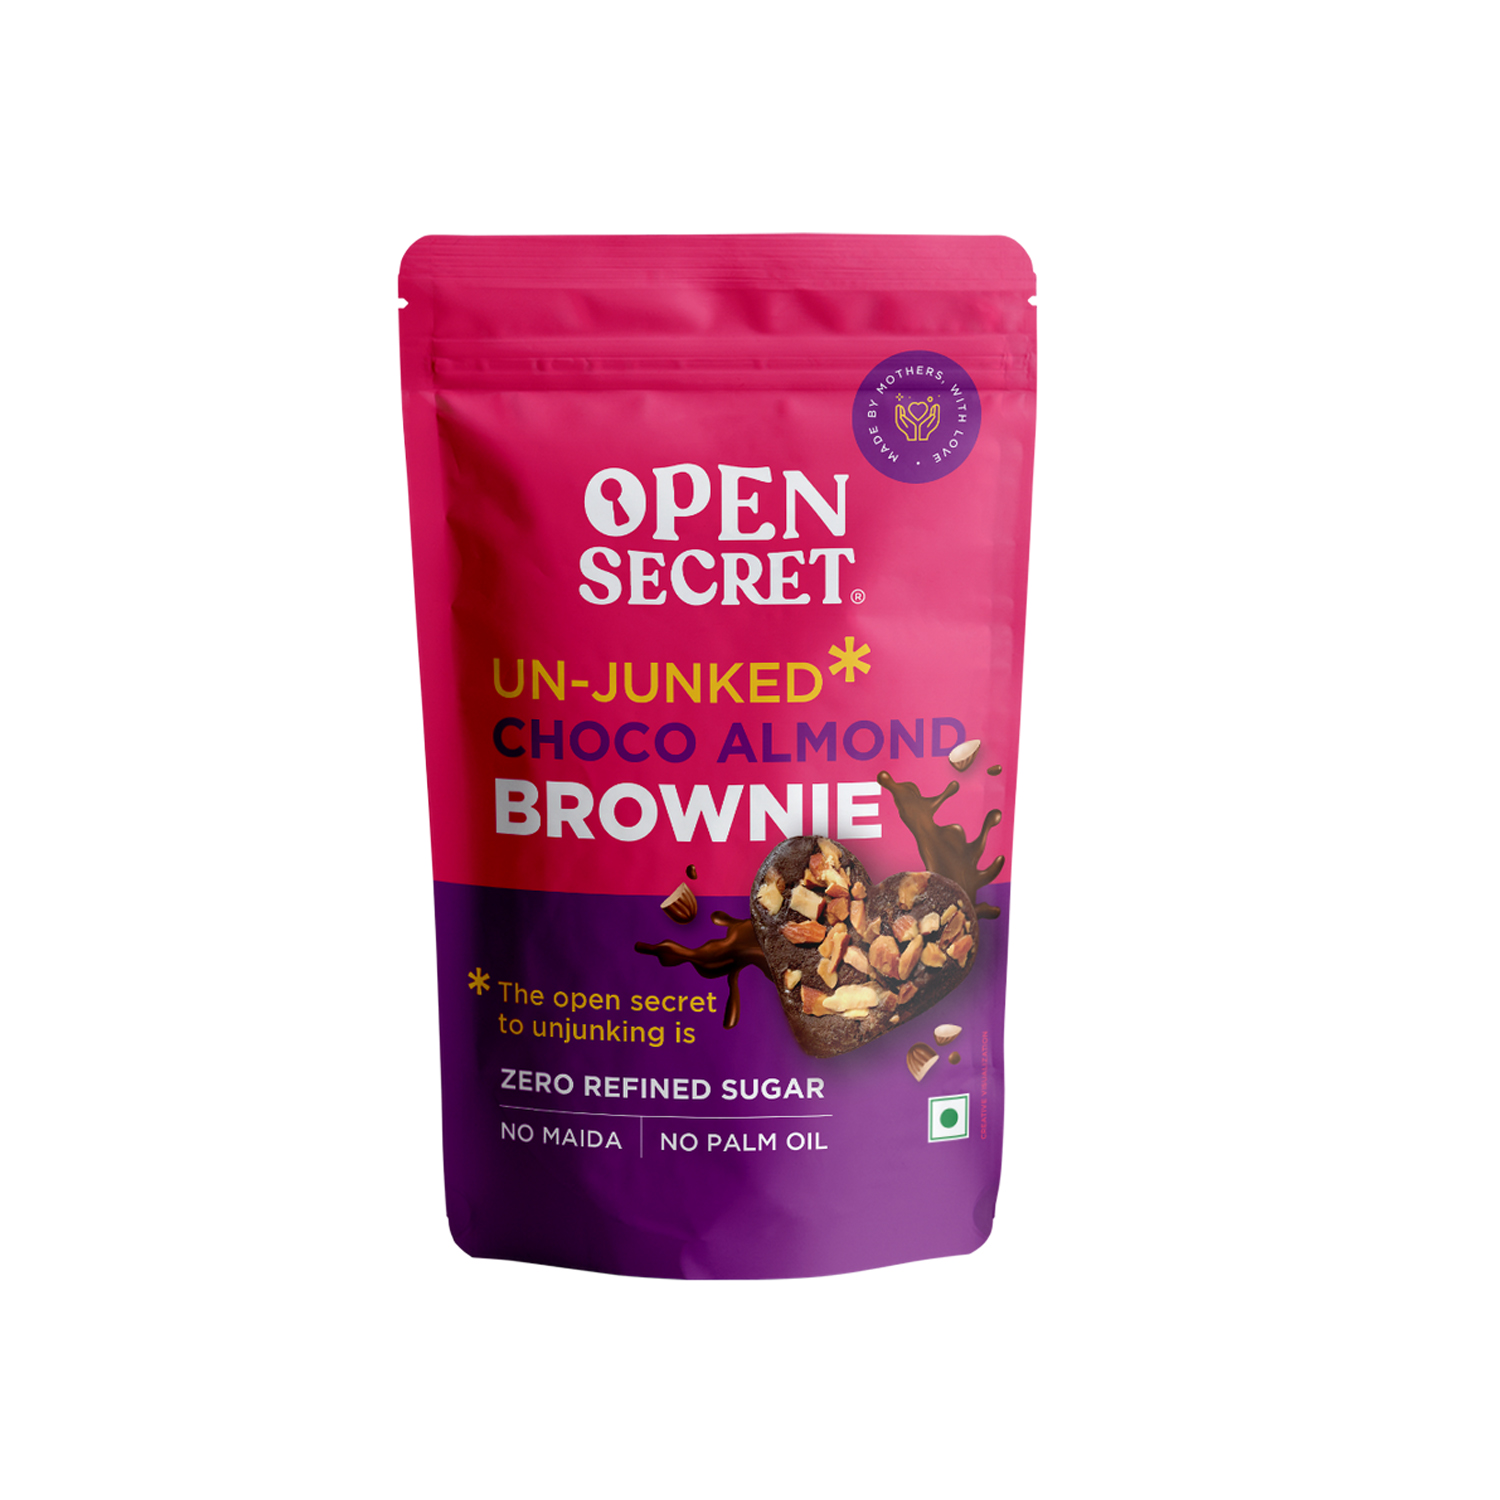 Open Secret Choco Almond Brownie 1.56grm